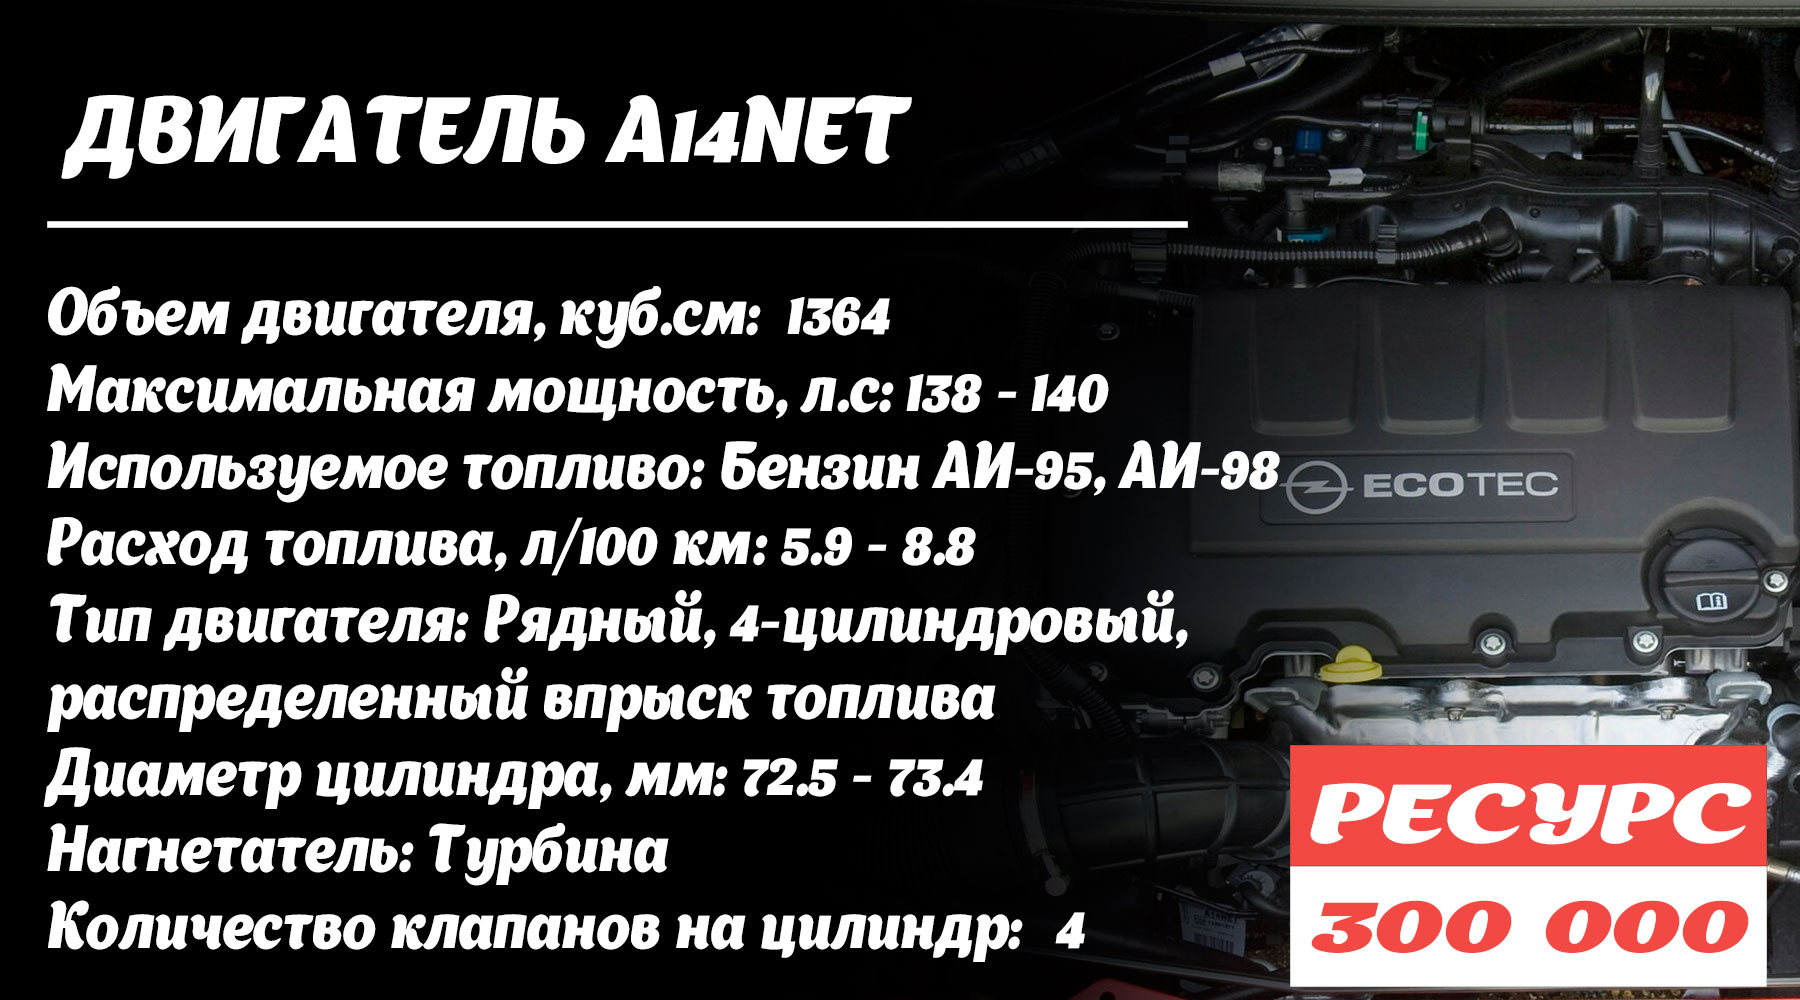 Двигатель A14NET